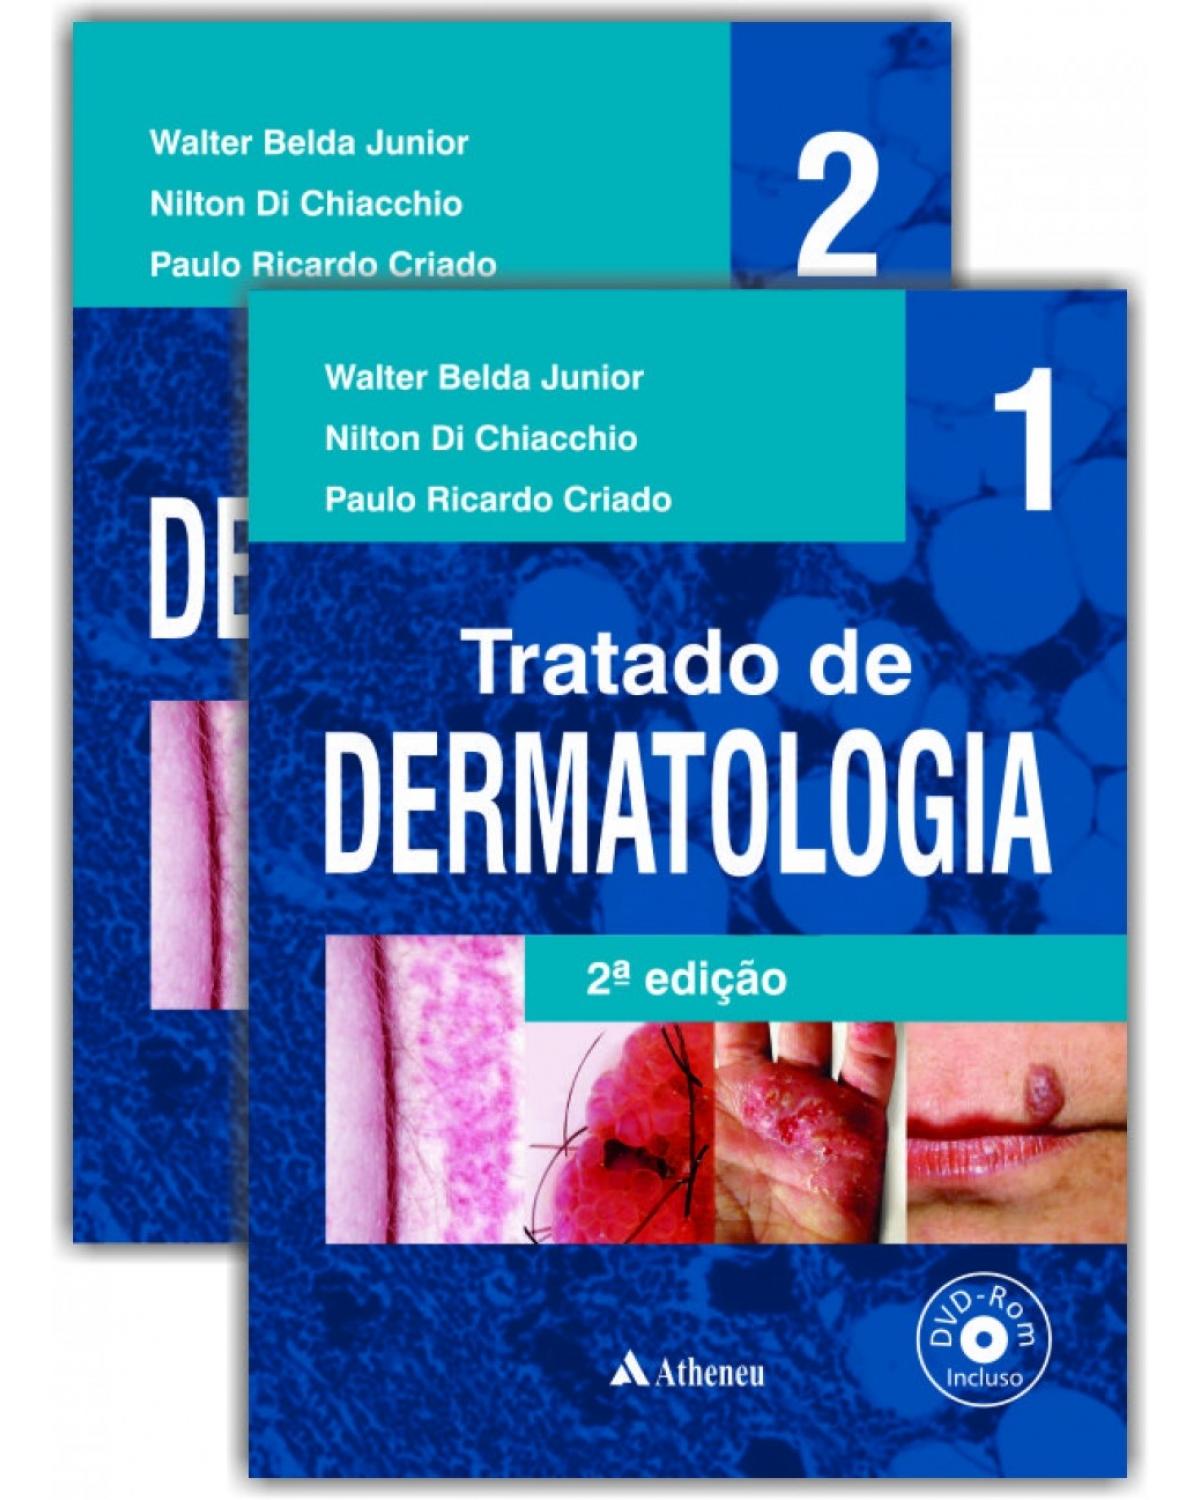 Tratado de dermatologia - 2ª Edição | 2014